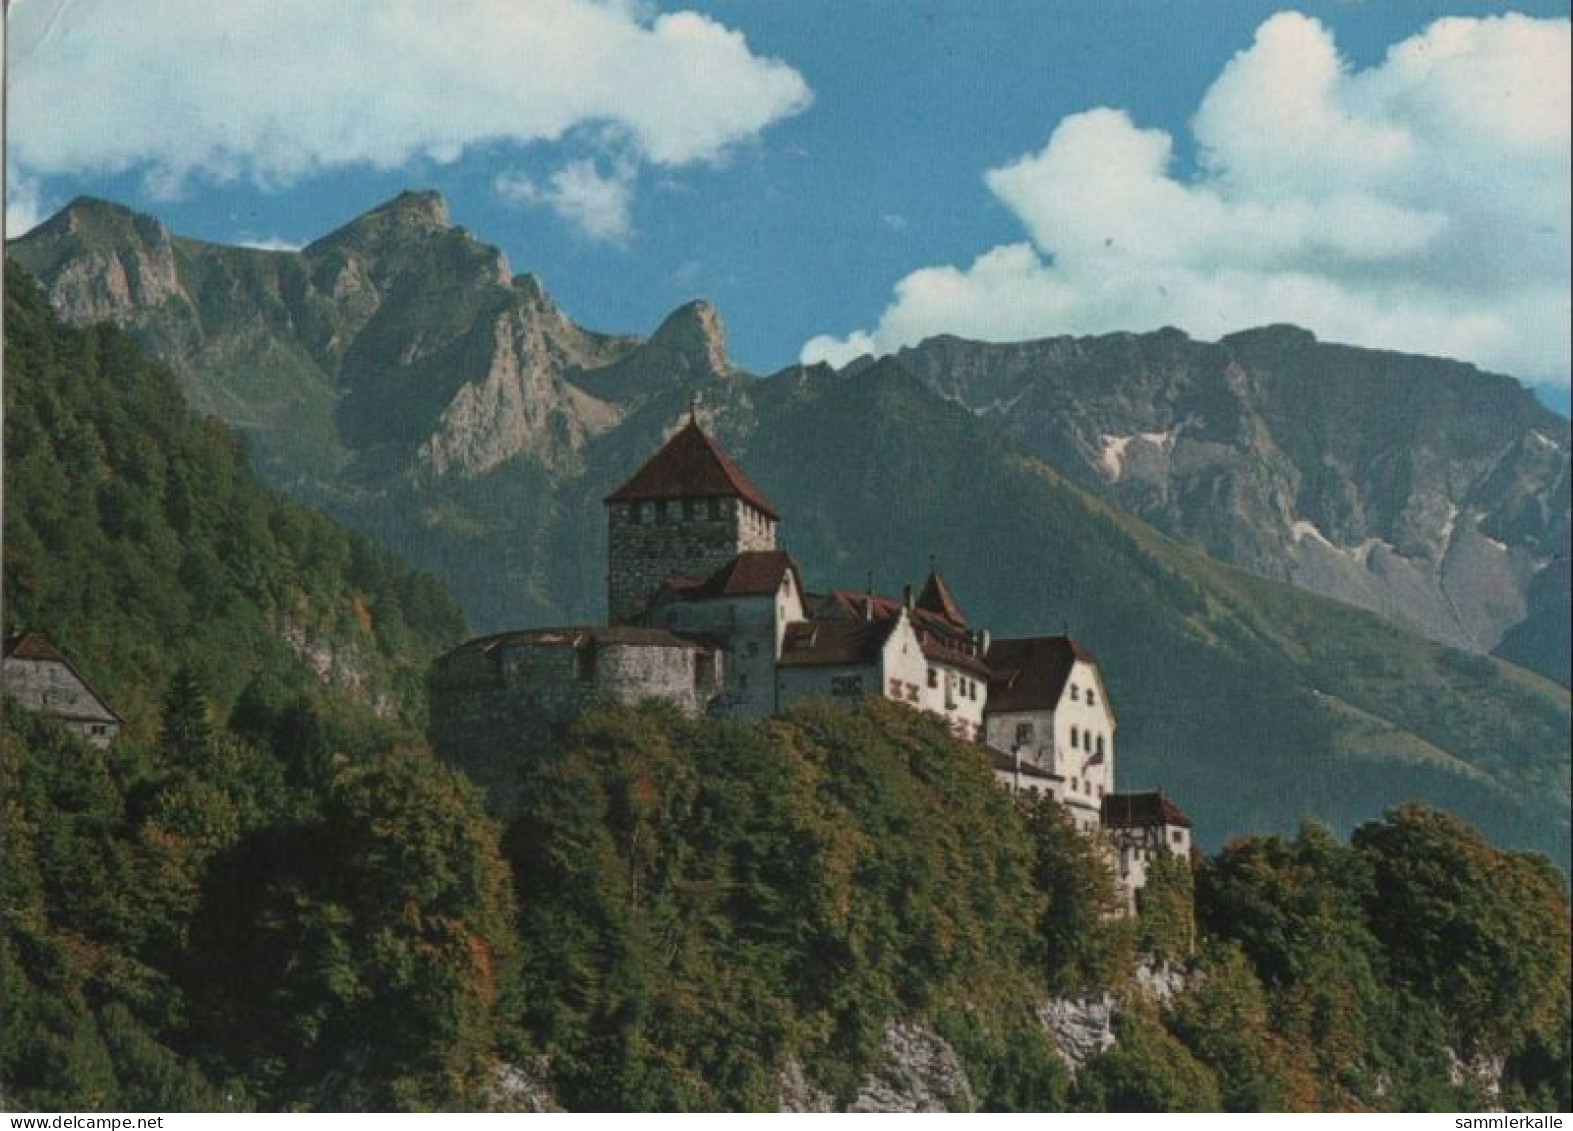 90207 - Liechtenstein - Vaduz - Schloss - 1969 - Liechtenstein